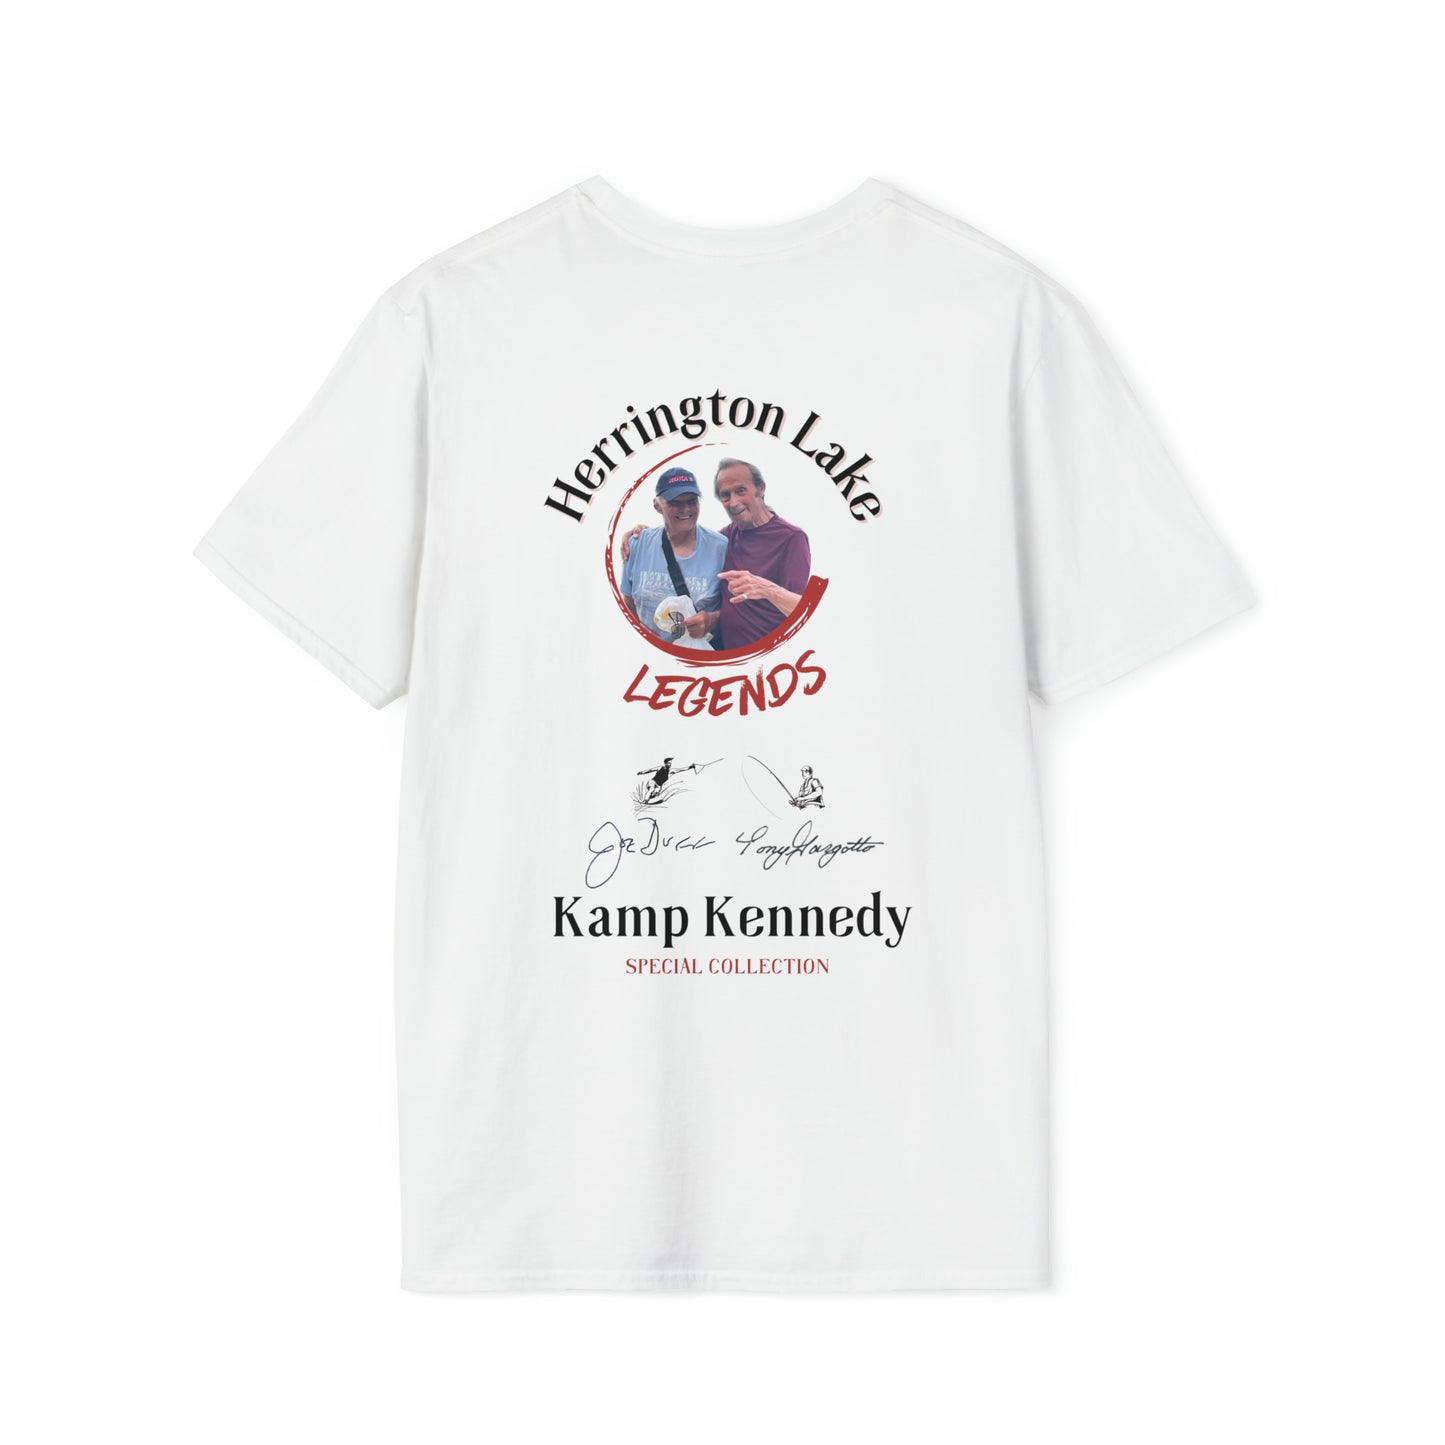 Kamp Kennedy LEGENDS HLCL UltraSoft Knit Tee